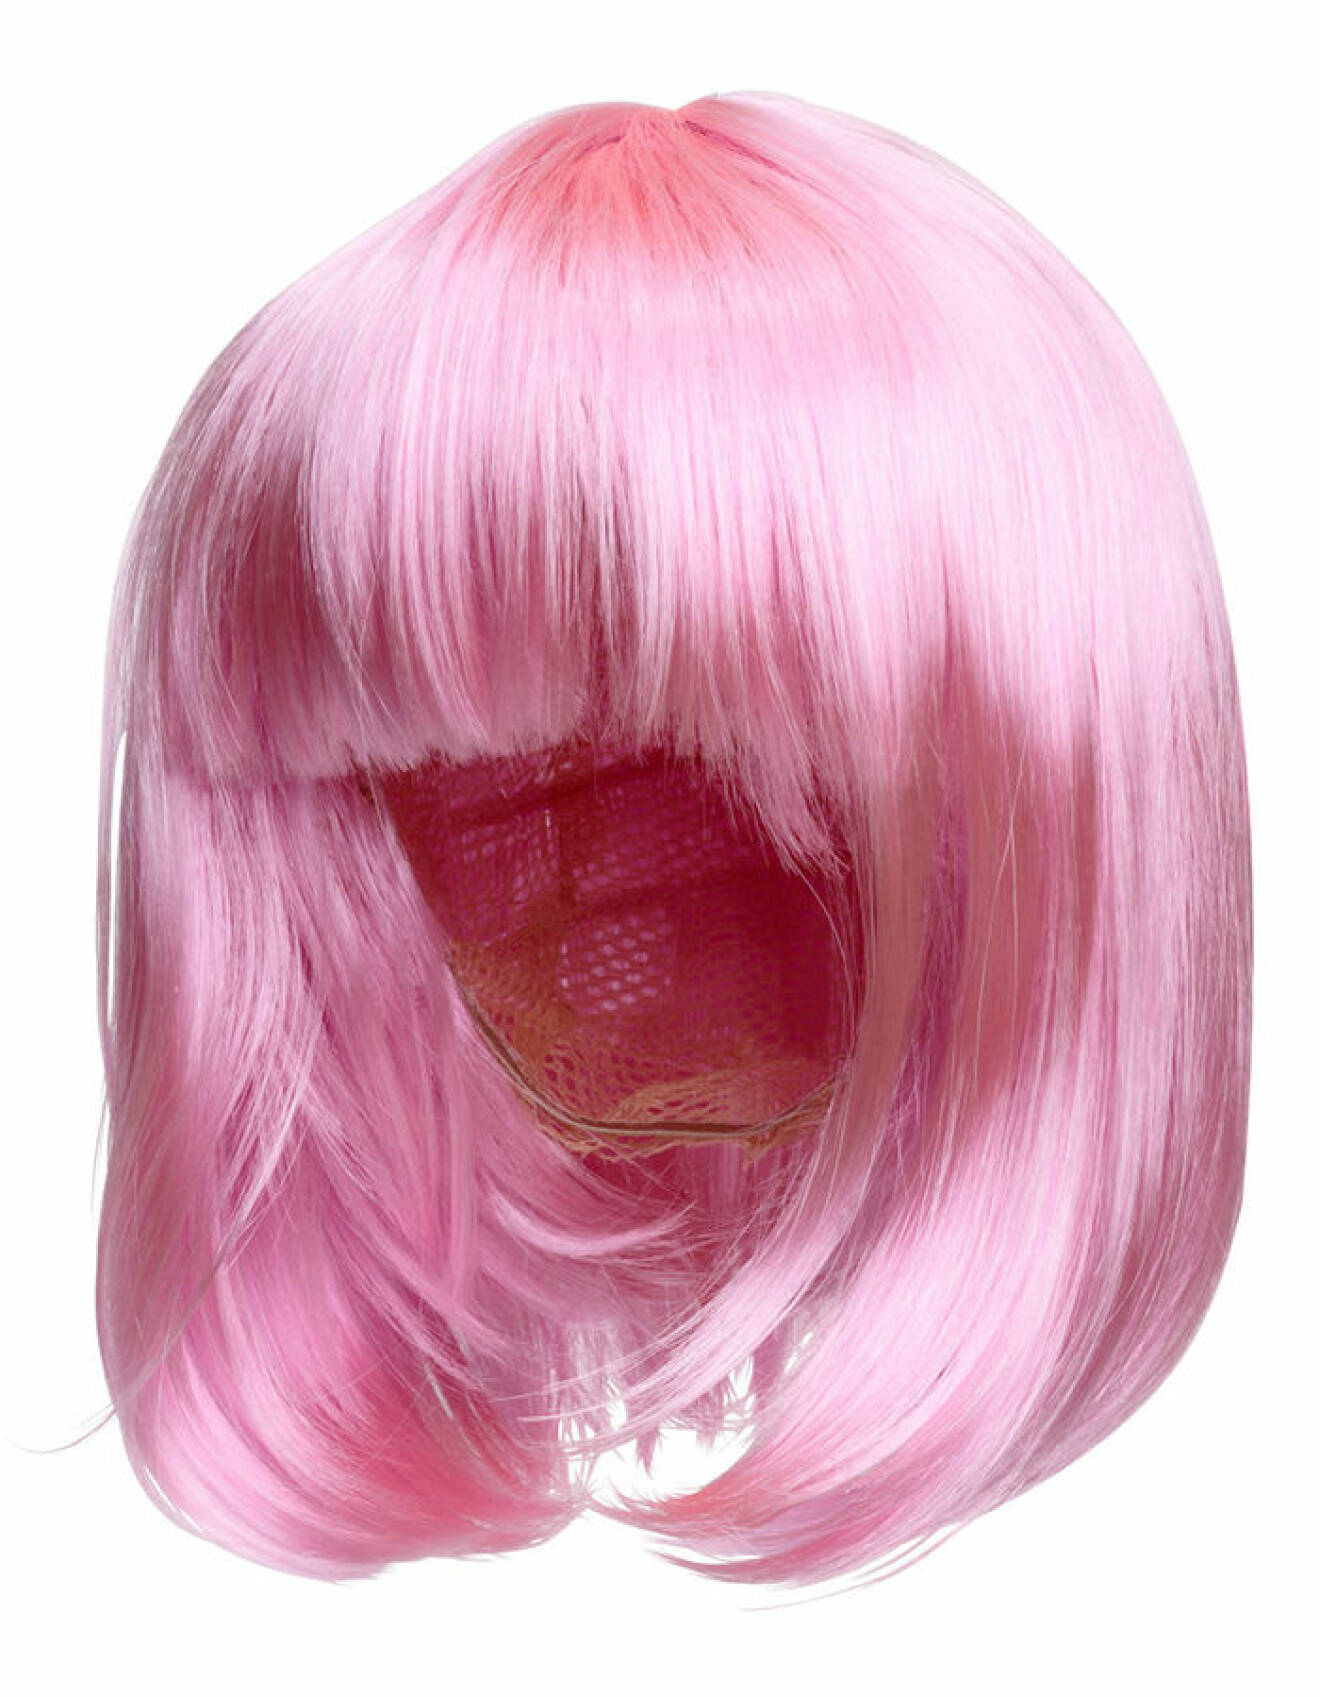 Rosa peruk med lugg från H&M.